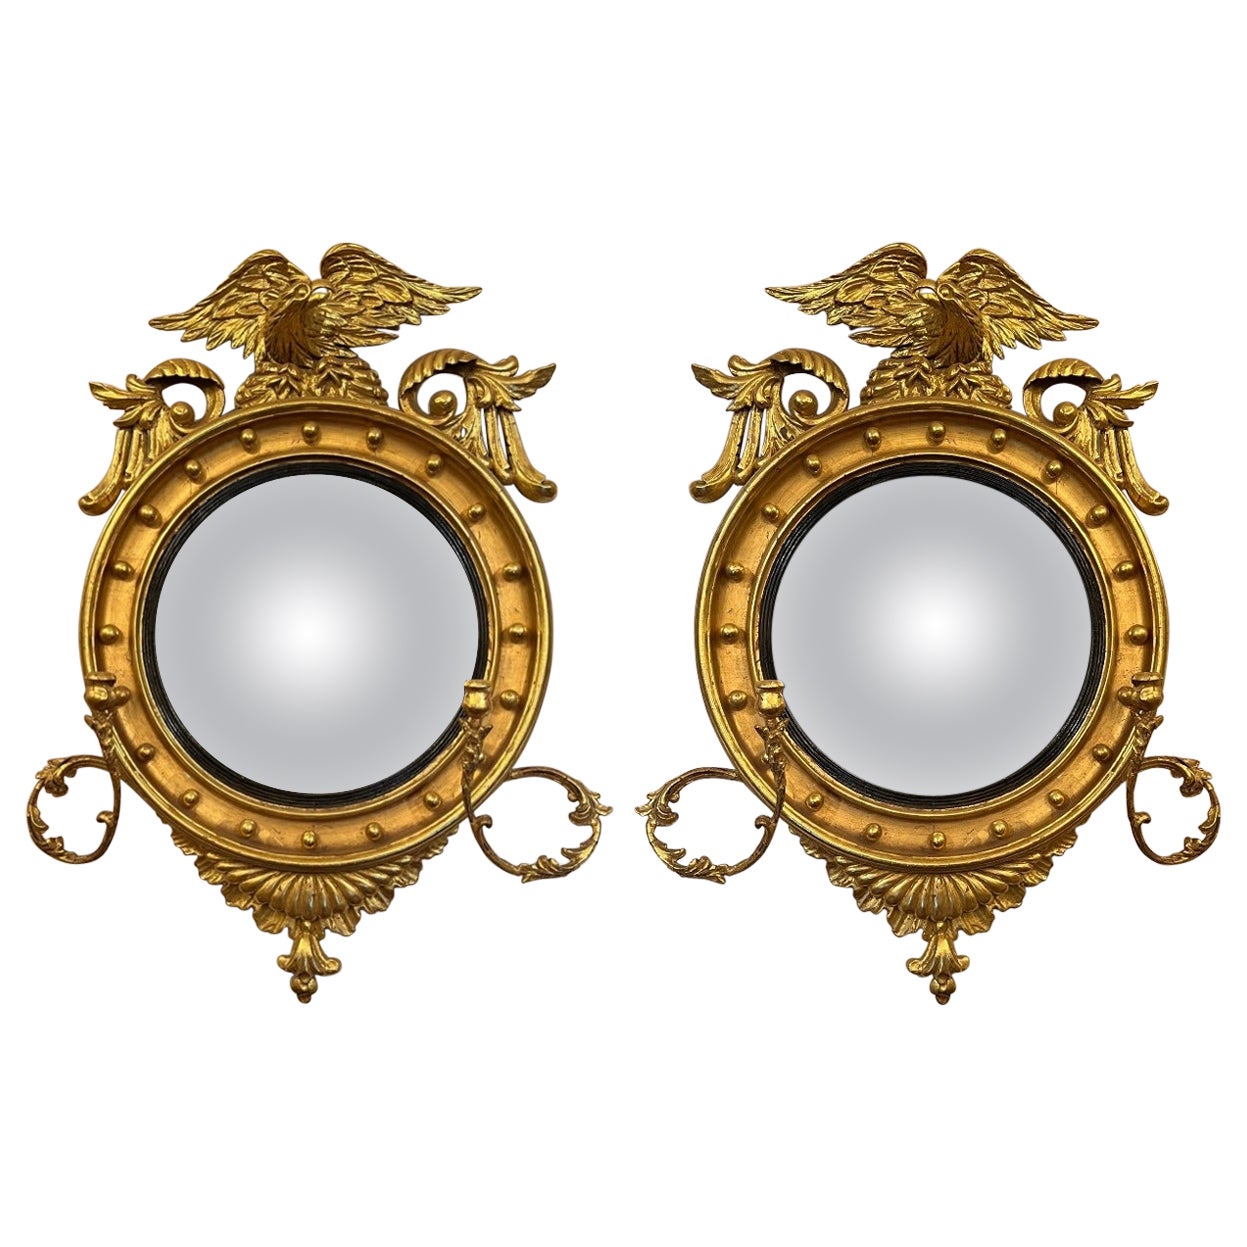 Rare Pair Antique American Federal Convex "Bullseye" Mirrors, Circa 1850-1870.